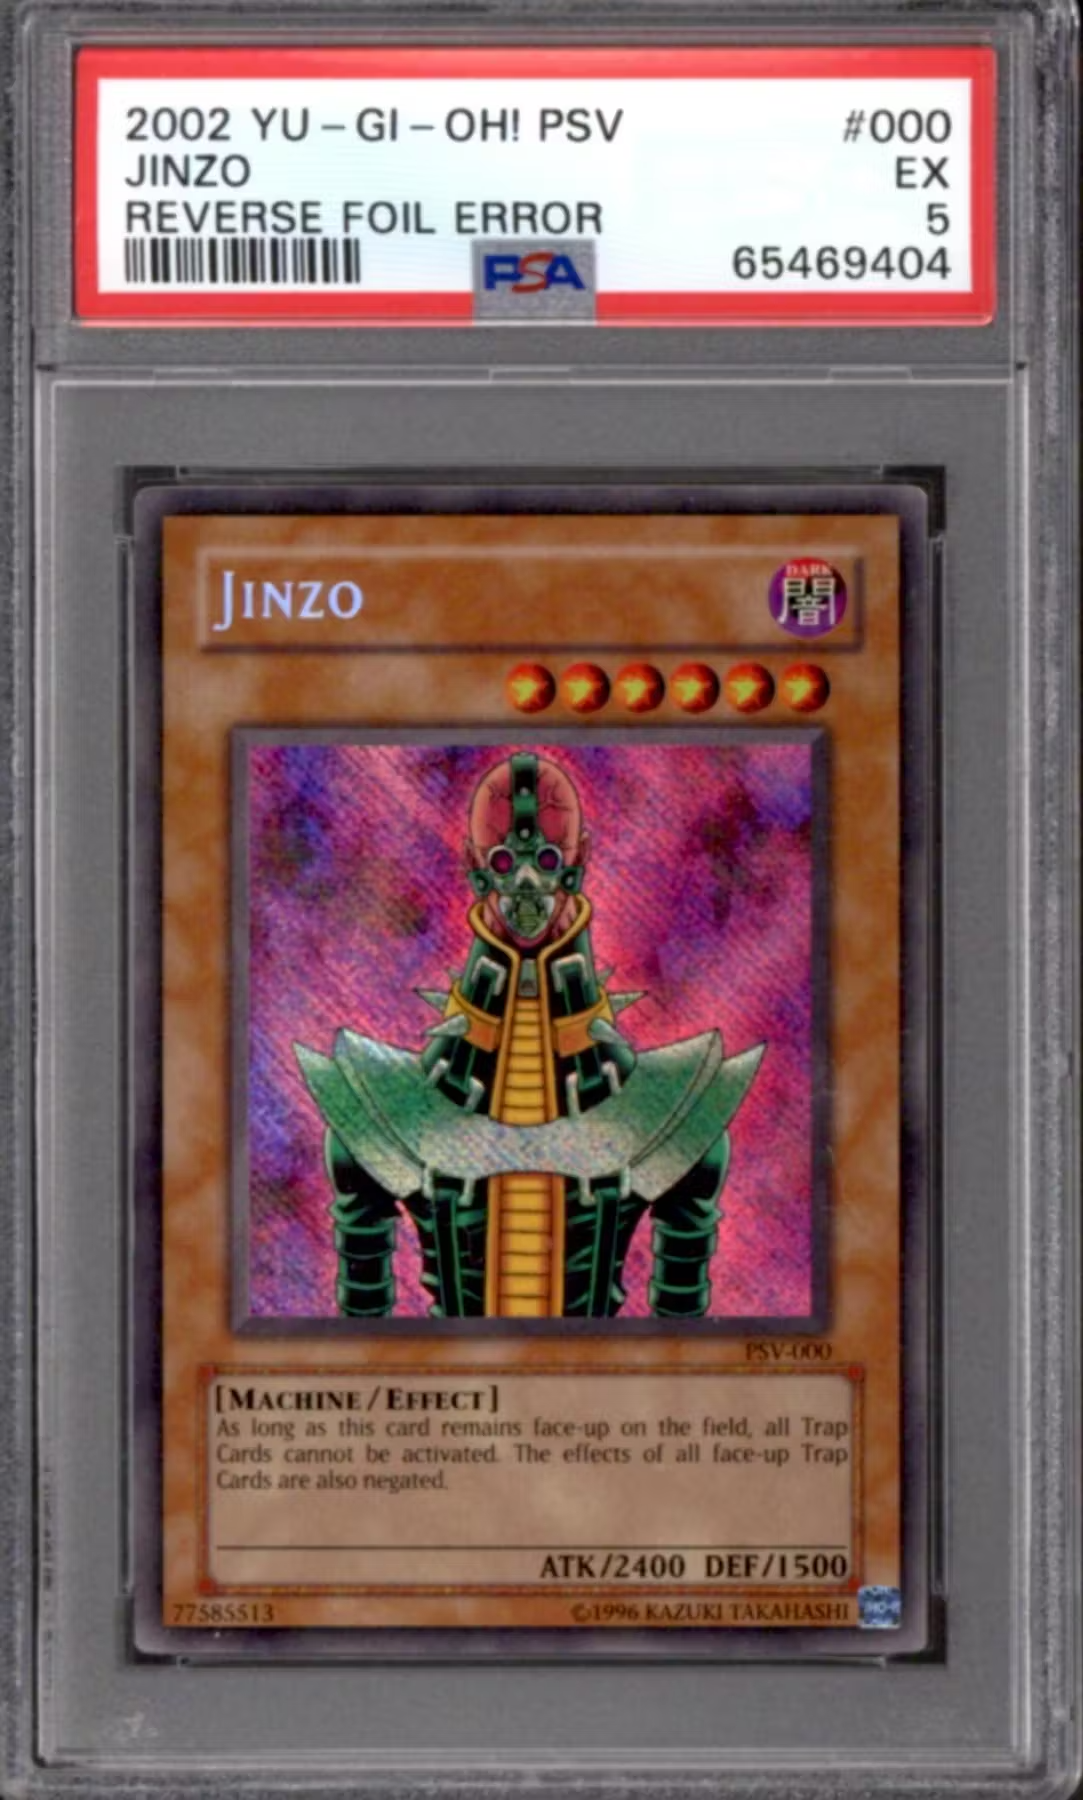 Yugioh Pharaoh's Servant Reverse Foil Error Jinzo PSV-000 PSA 5